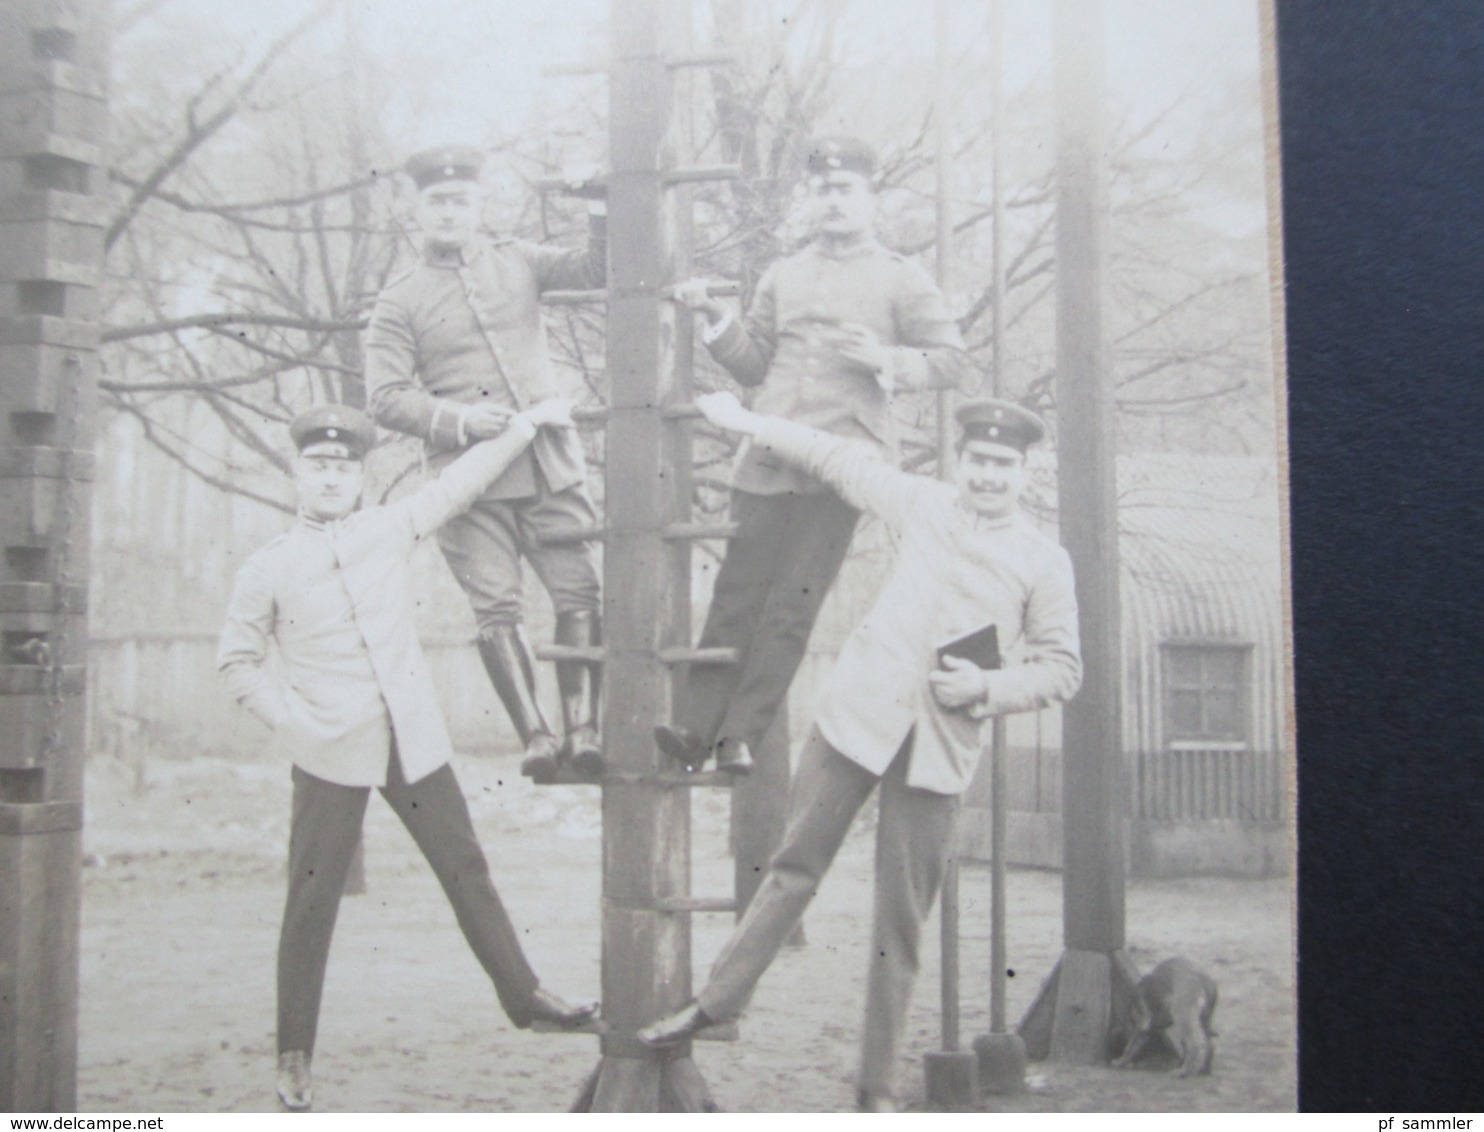 1. WK Fotos / AK 48 Stück. Soldaten / Krieg / Zivil / Uniform / Eisernes Kreuz / Orden. aus einem Nachlass. Swinemünde